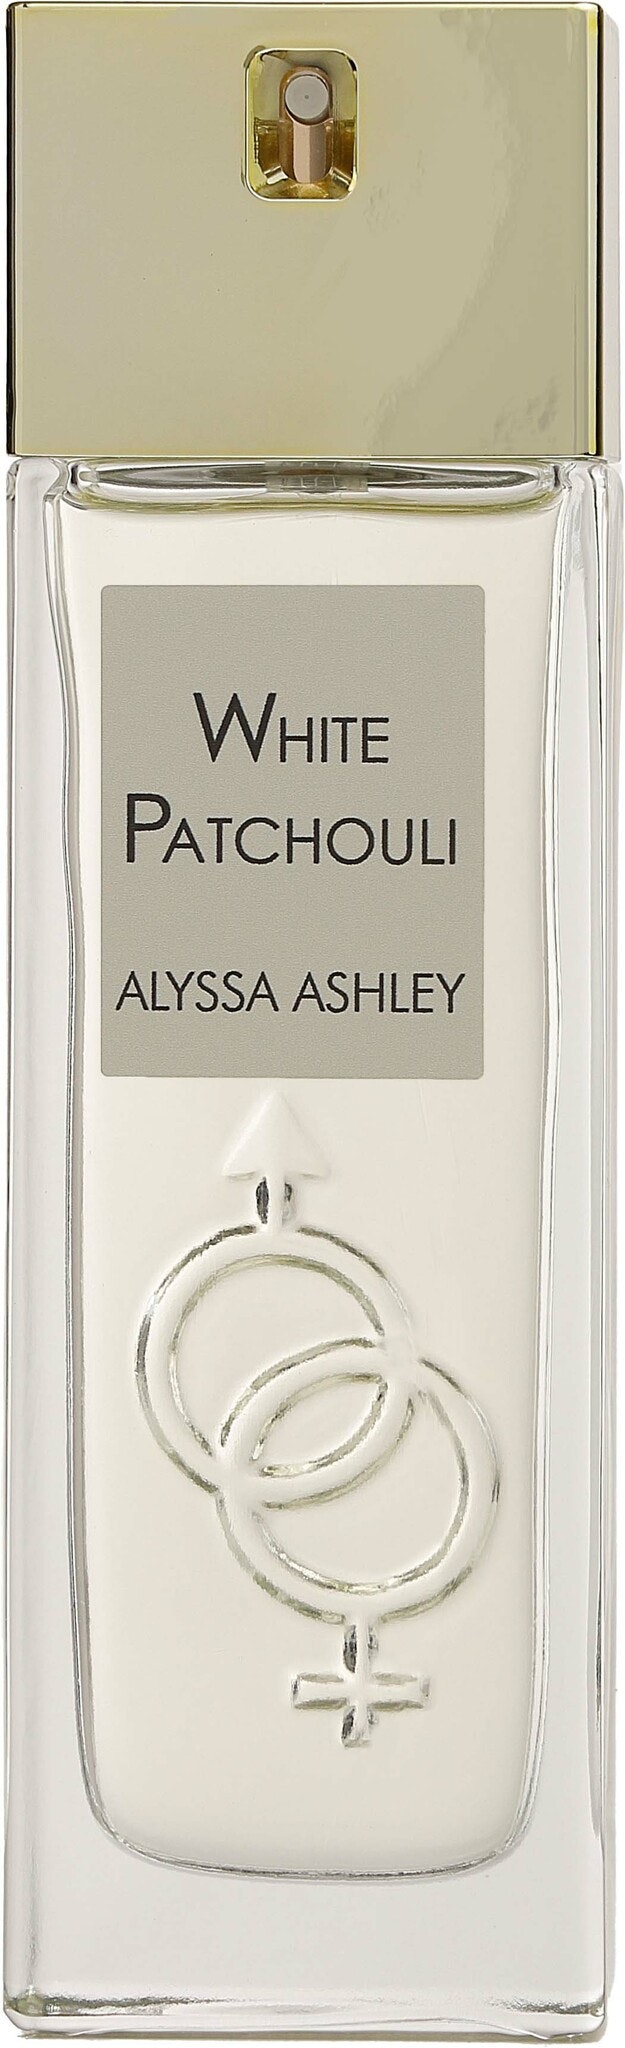 Alyssa Ashley White Patchouli Eau de Parfum